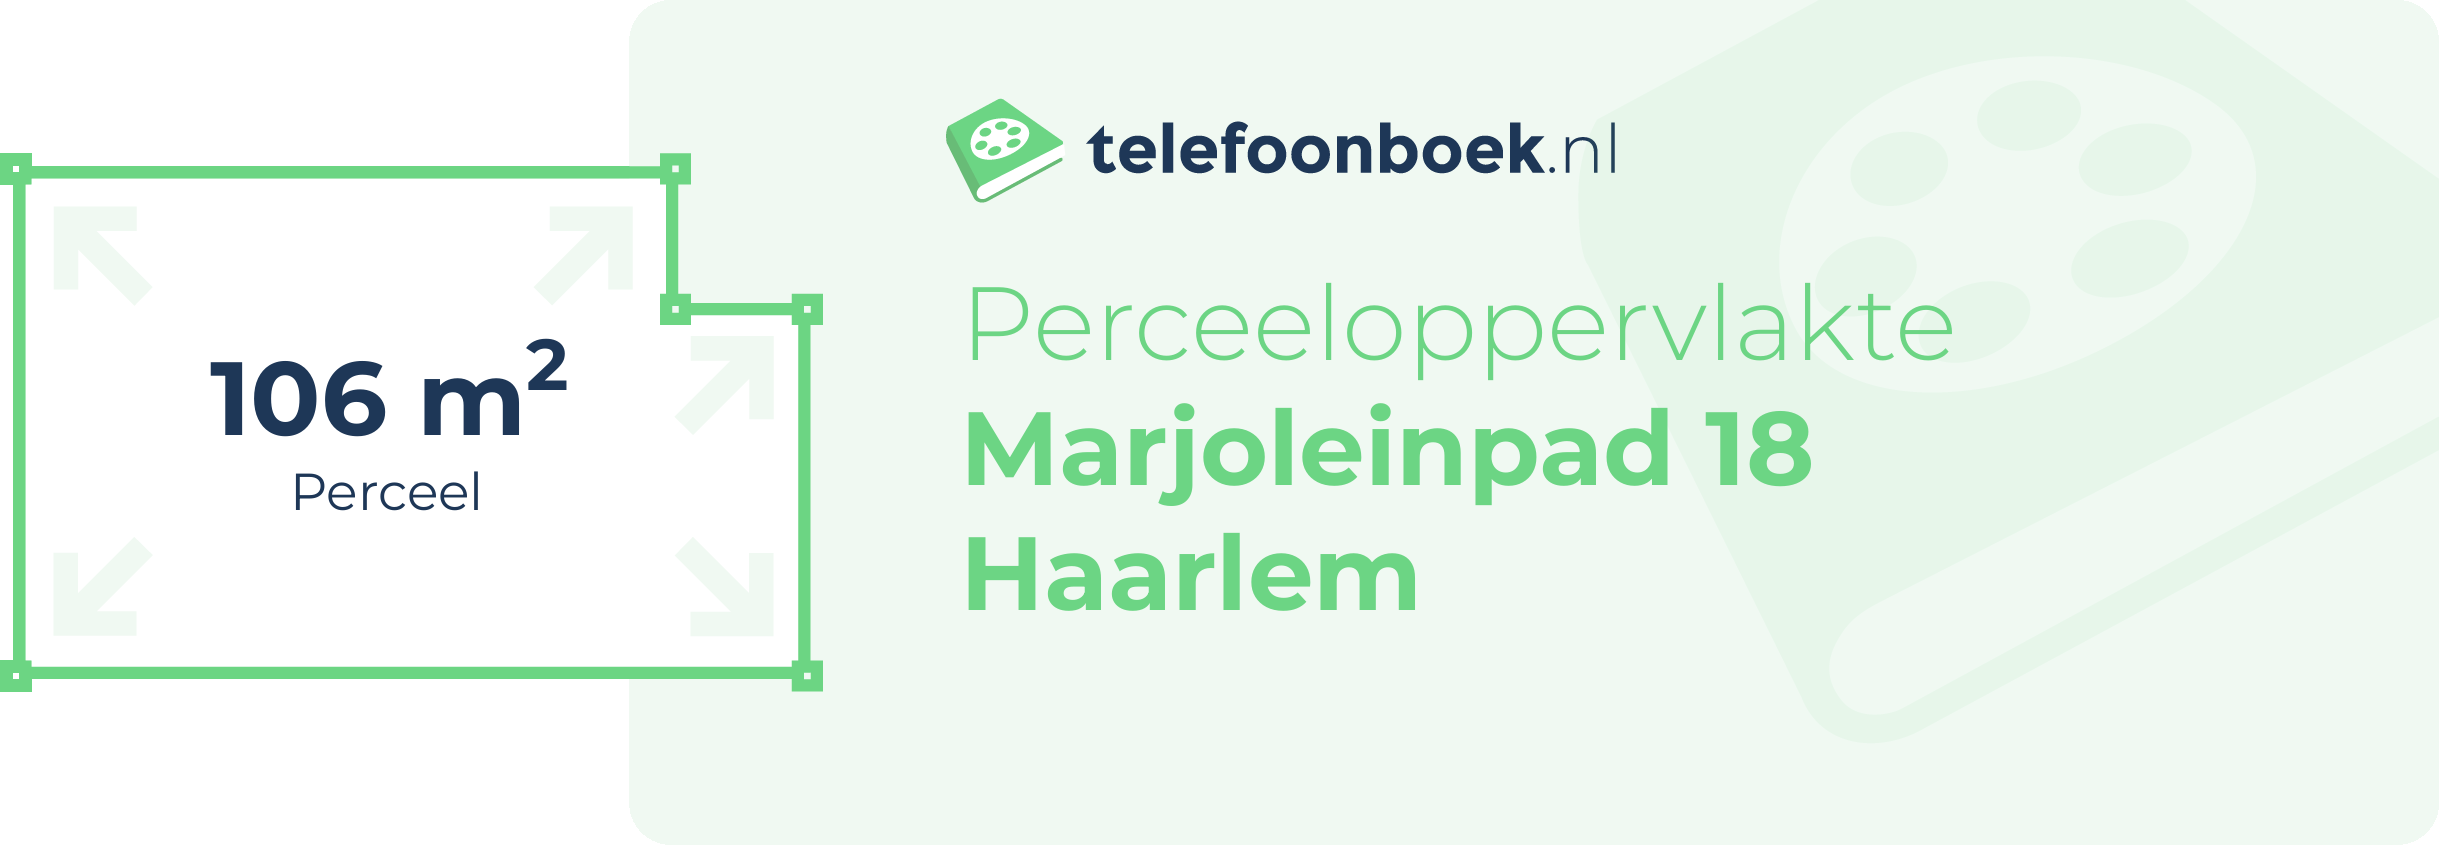 Perceeloppervlakte Marjoleinpad 18 Haarlem